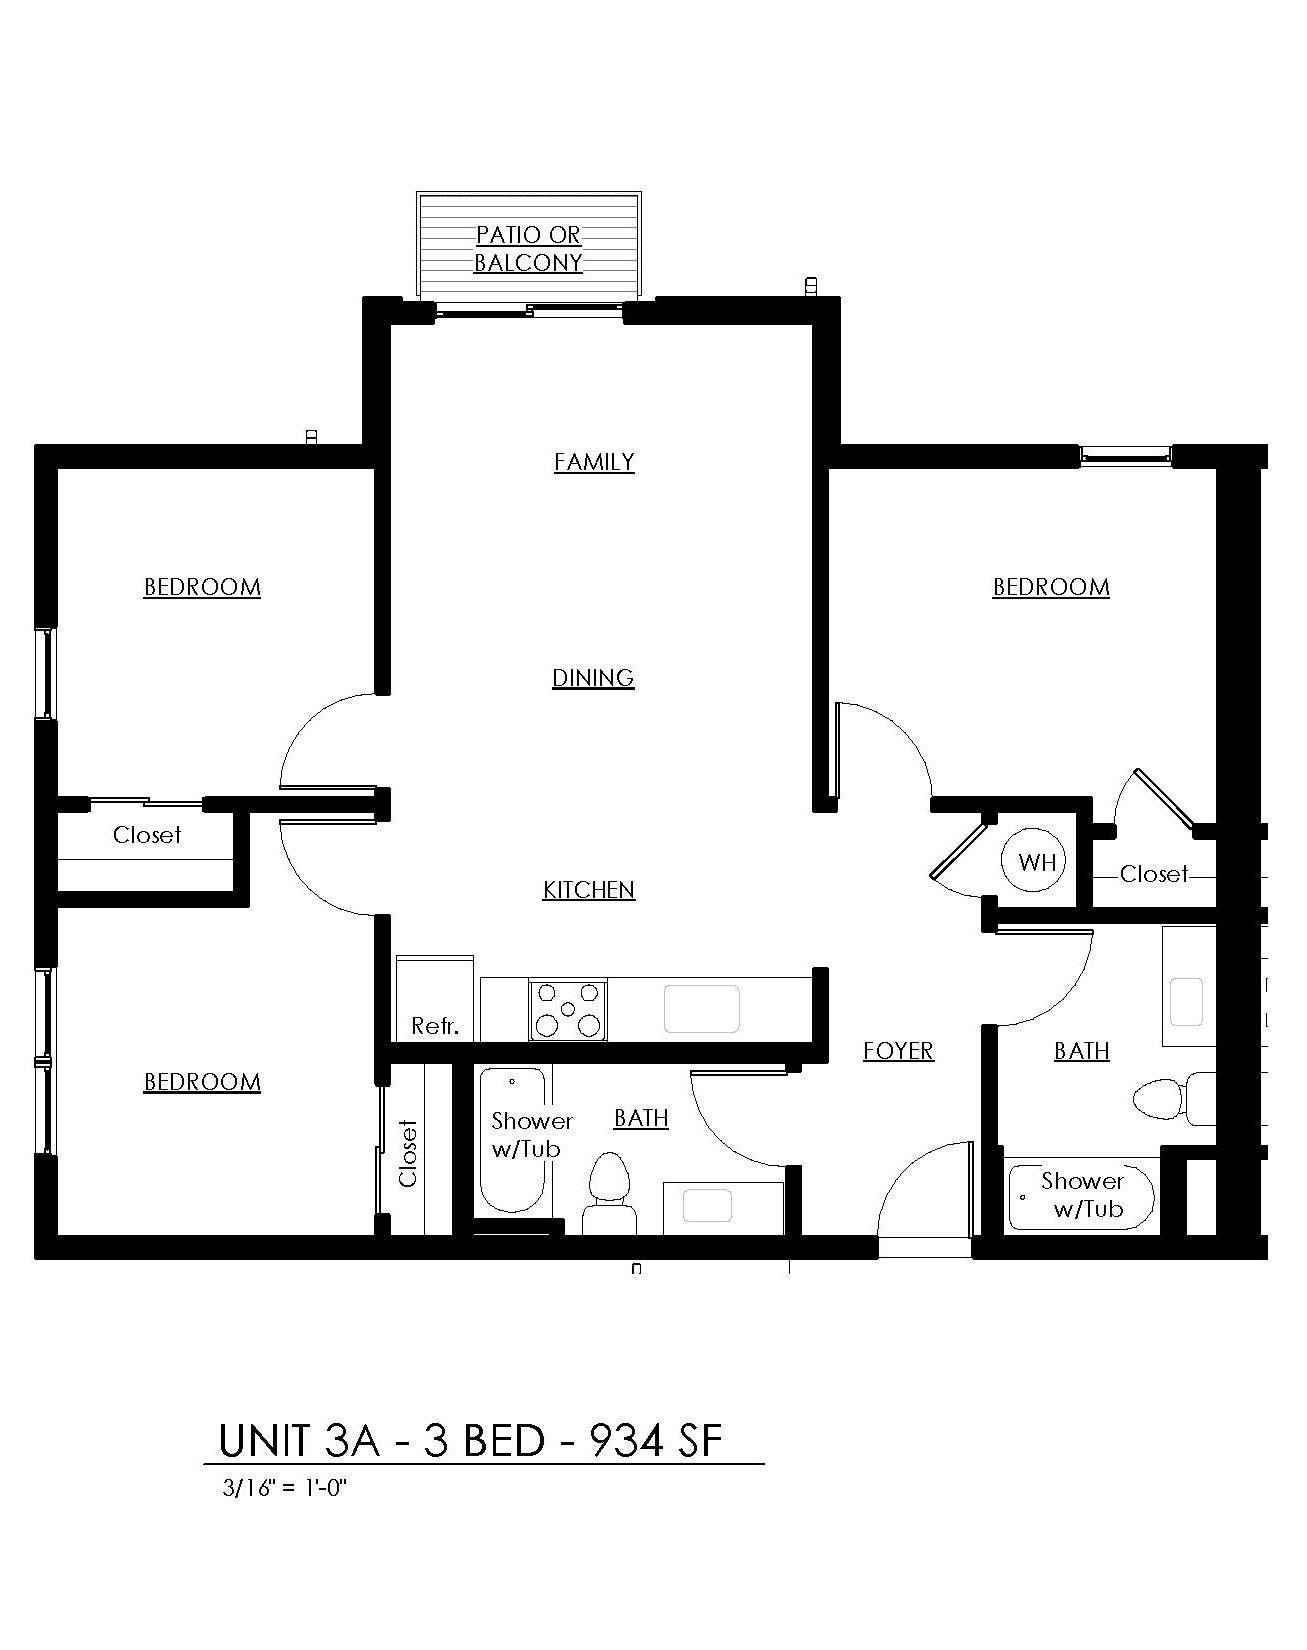 Marina Village 3 bedroom floor plan